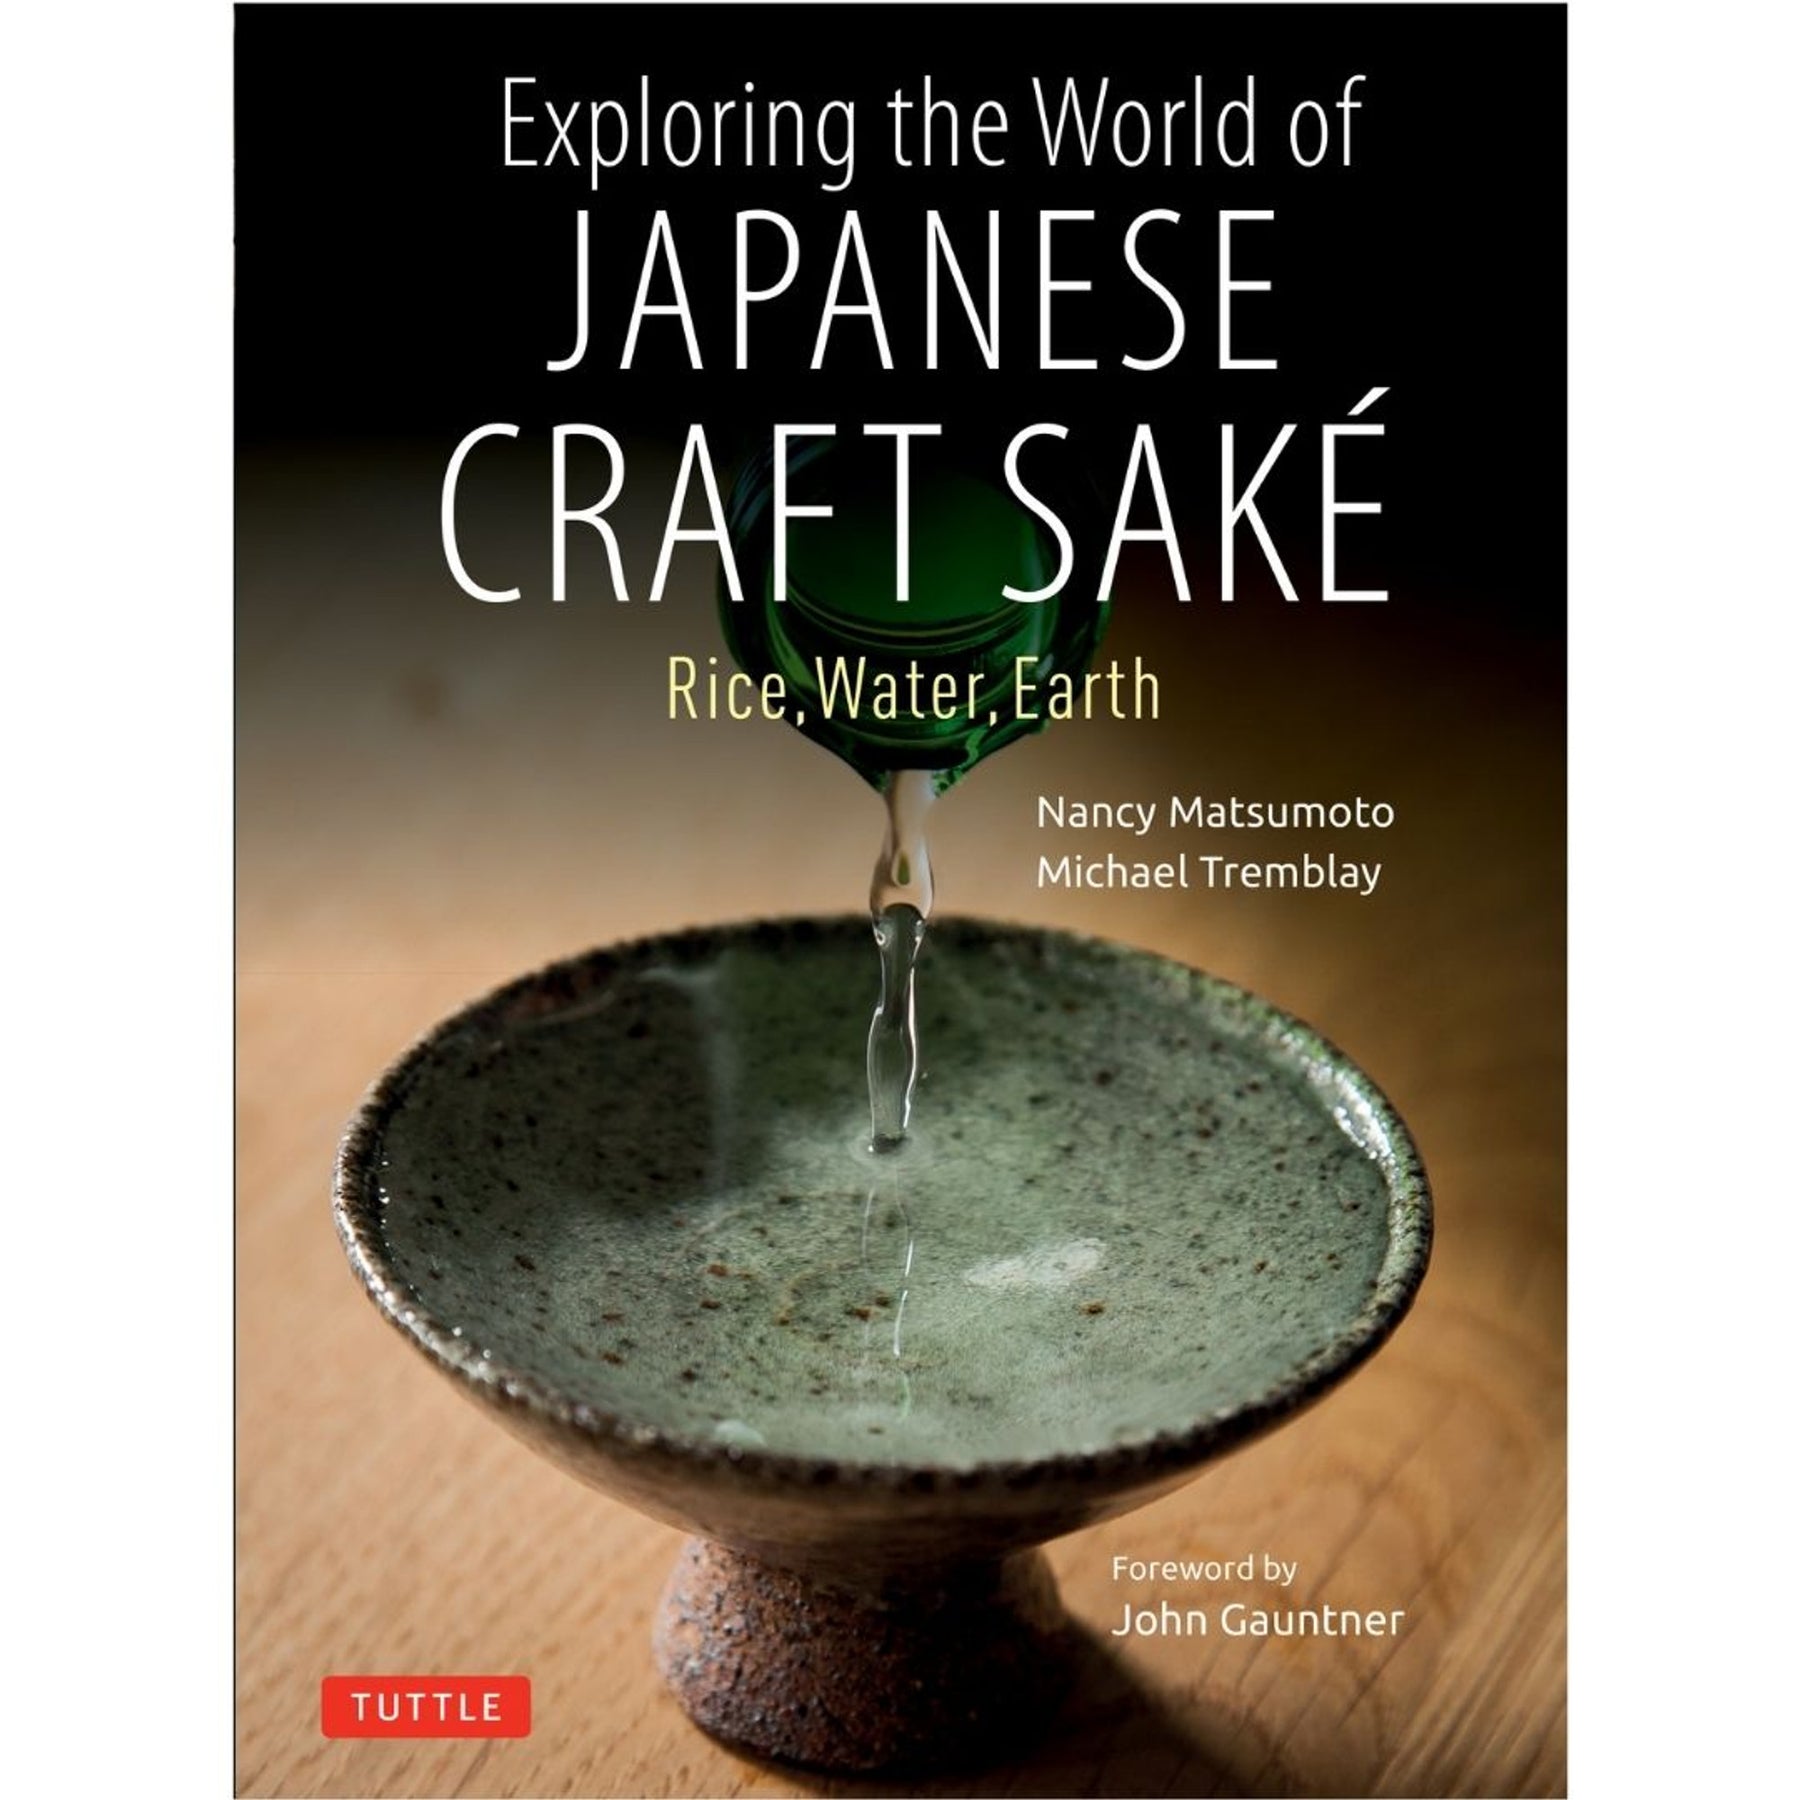 True Sake Book Signing - Exciting Sake Author News!